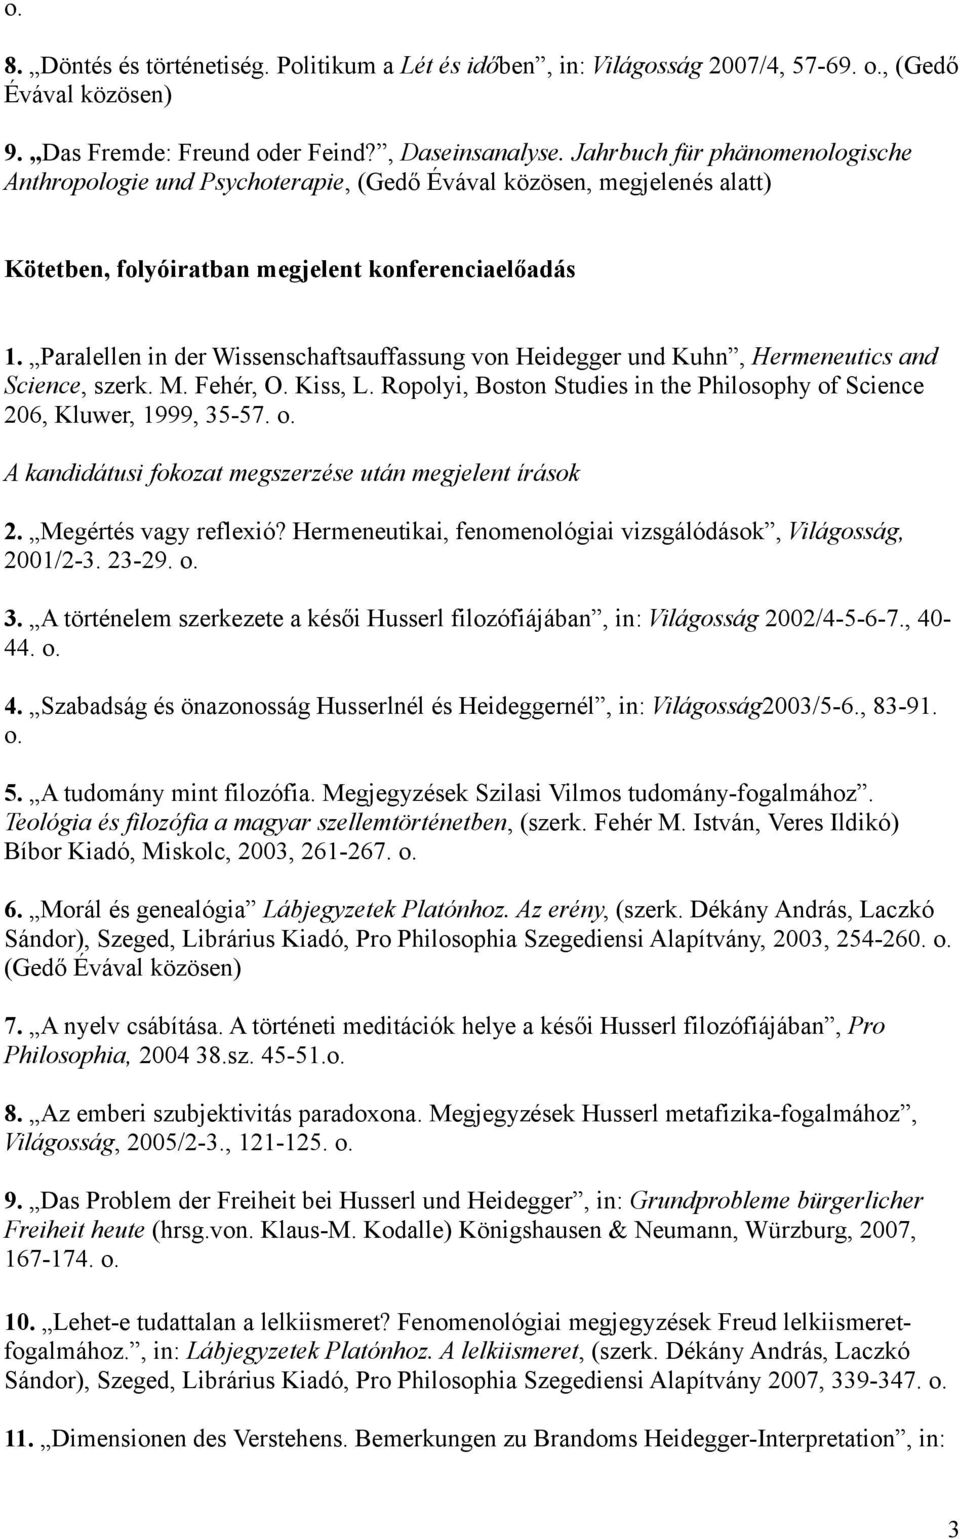 Paralellen in der Wissenschaftsauffassung von Heidegger und Kuhn, Hermeneutics and Science, szerk. M. Fehér, O. Kiss, L. Ropolyi, Boston Studies in the Philosophy of Science 206, Kluwer, 1999, 35-57.